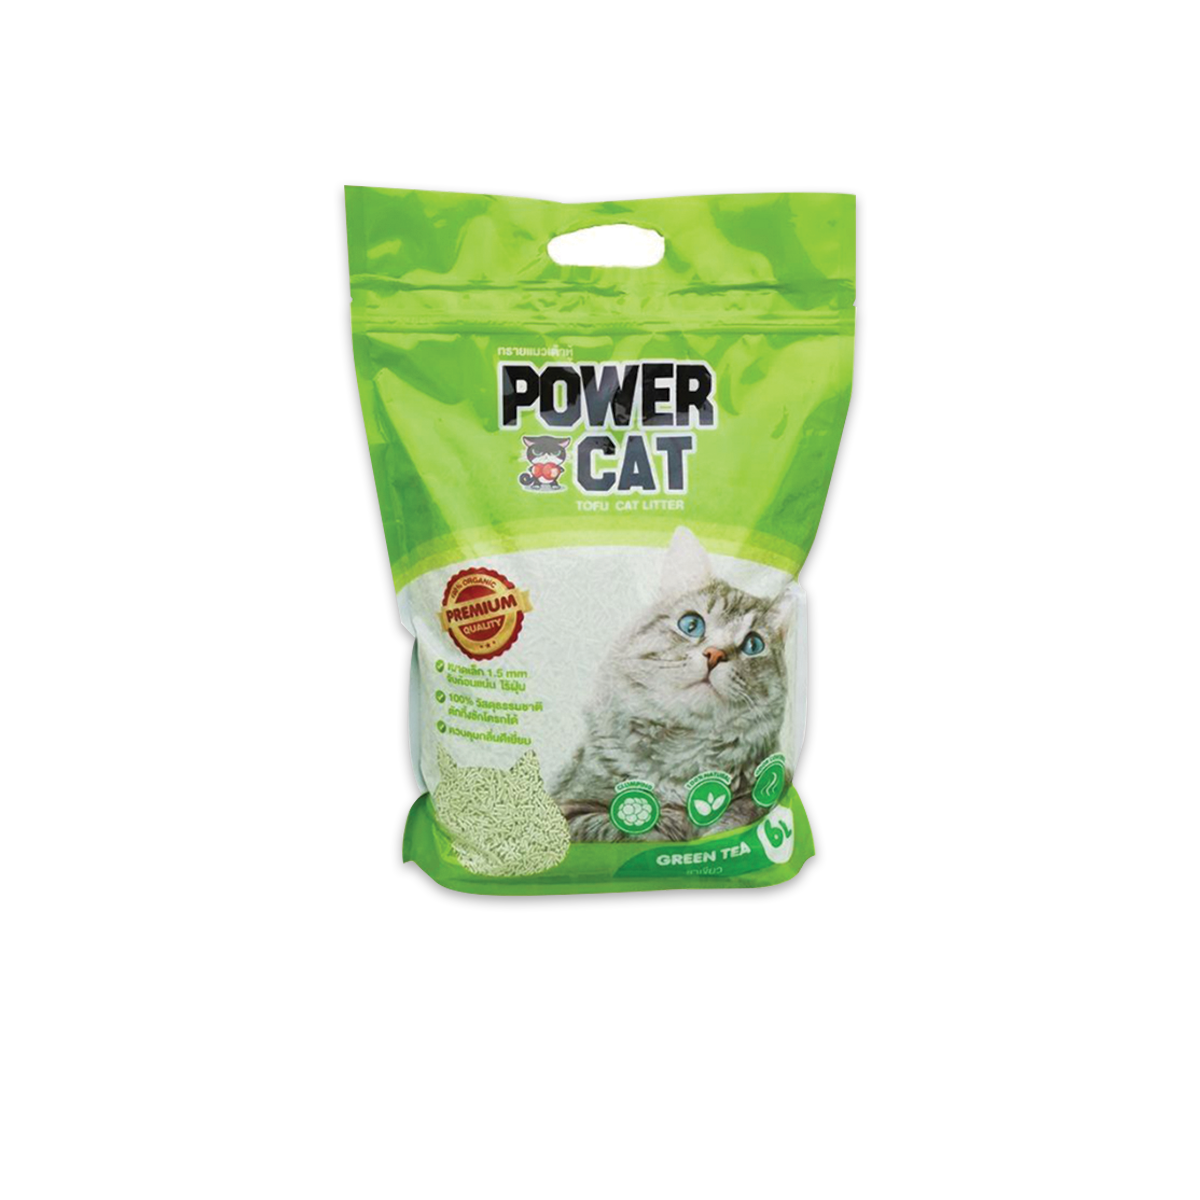 Power Cat พาวเวอร์ แคท ทรายแมวเต้าหู้กลิ่นชาเขียว ขนาด 6 ลิตร